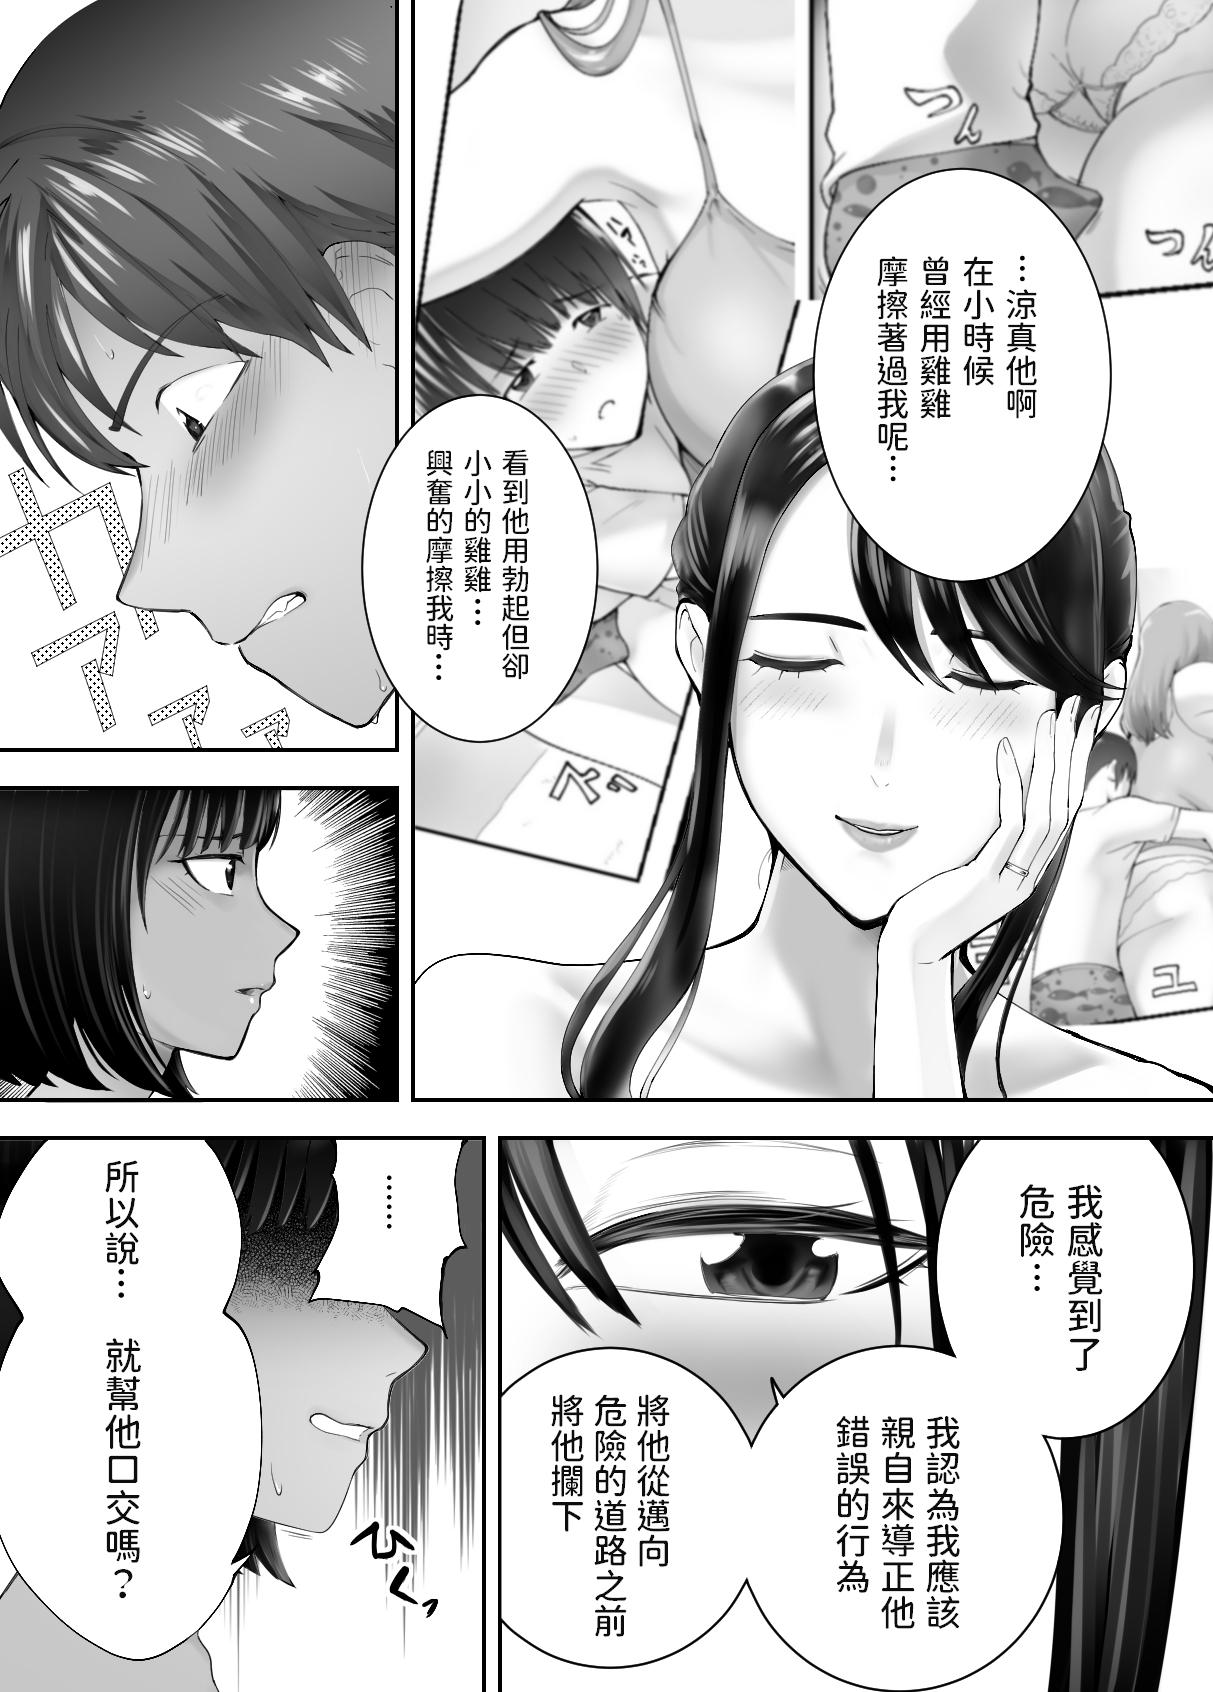 White Chick Osananajimi ga Mama to Yatte imasu. 7 - Original Tranny Porn - Page 6